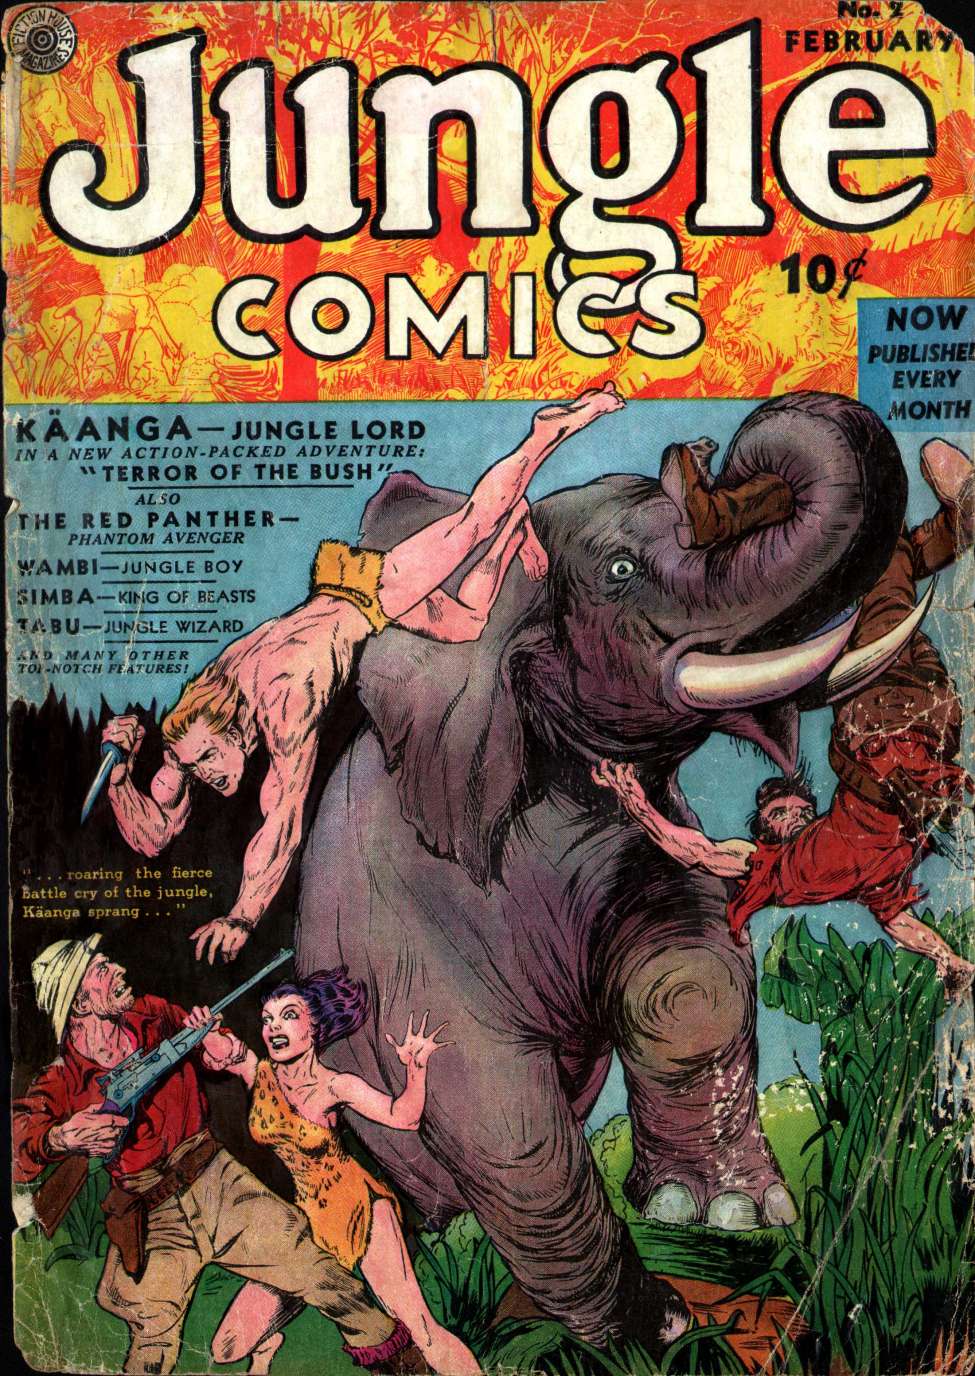 Book Cover For Jungle Comics 2 (5 fiche)